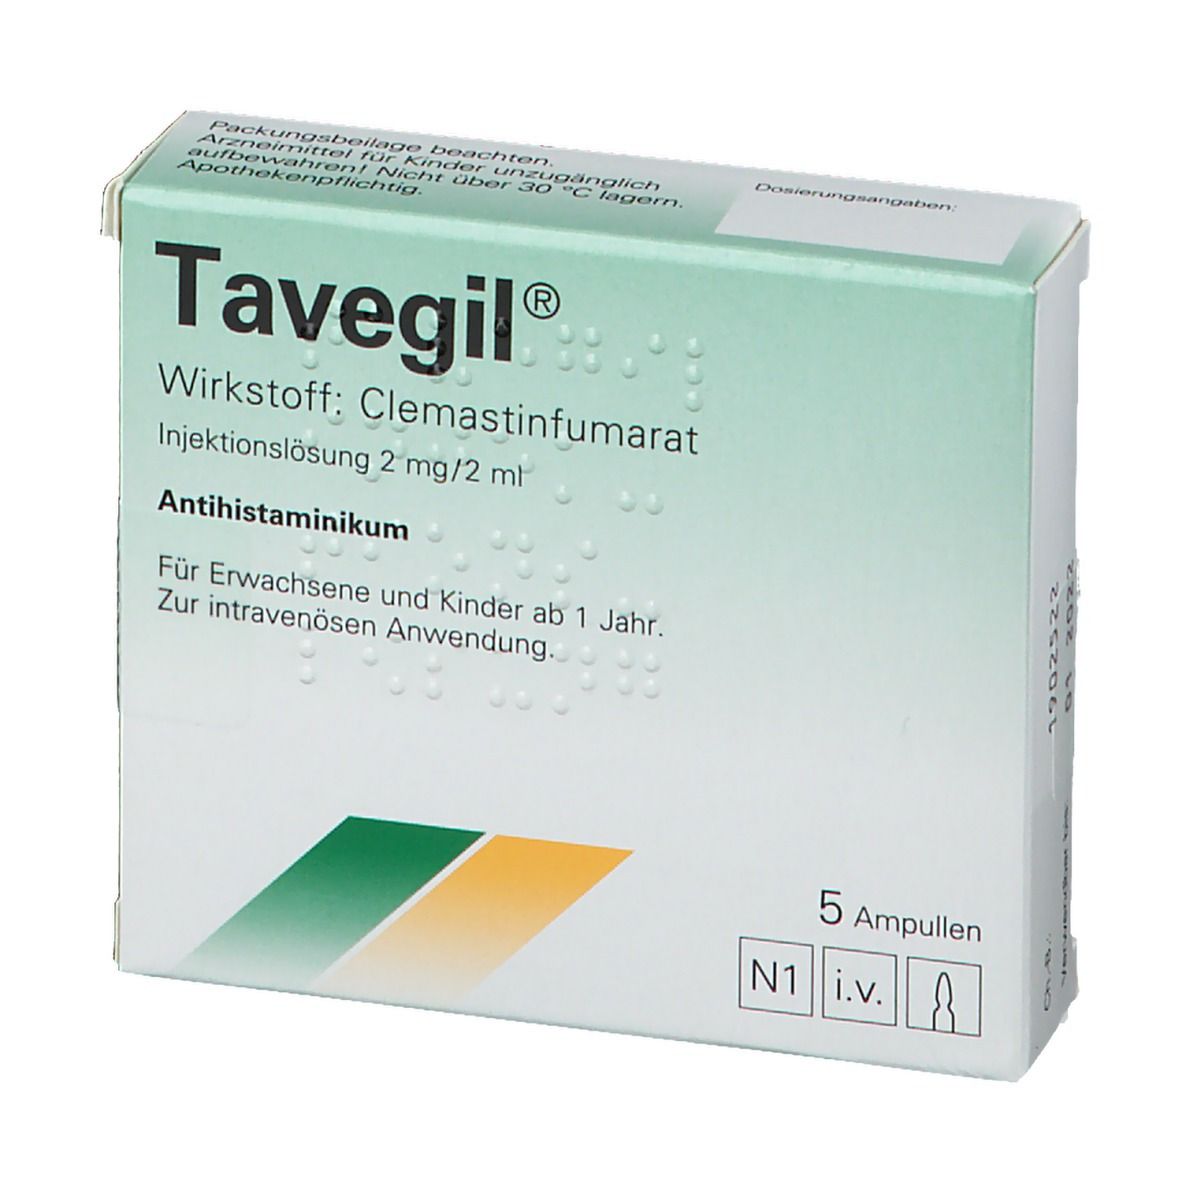 Tavegil® Injektionslösung